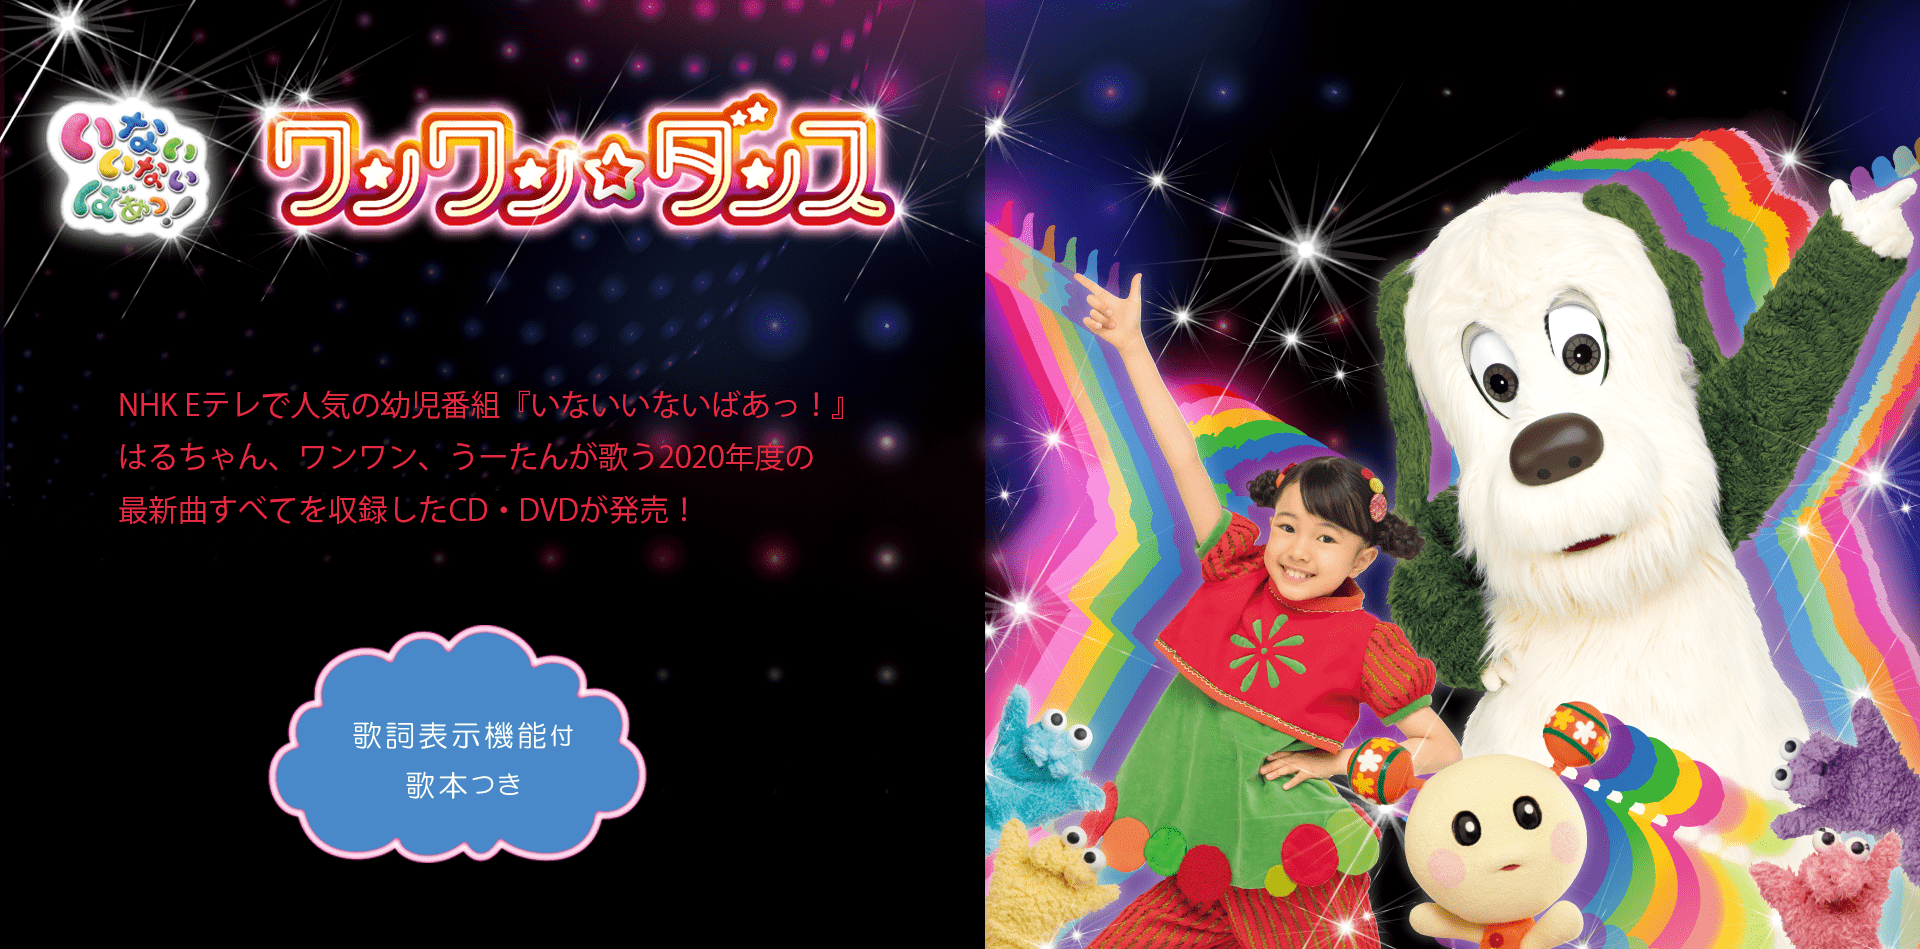 NHK Eテレで人気の幼児番組『いないいないばあっ！』はるちゃん、ワンワン、うーたんが歌う2020年度の最新曲すべてを収録したCD・DVDが発売！